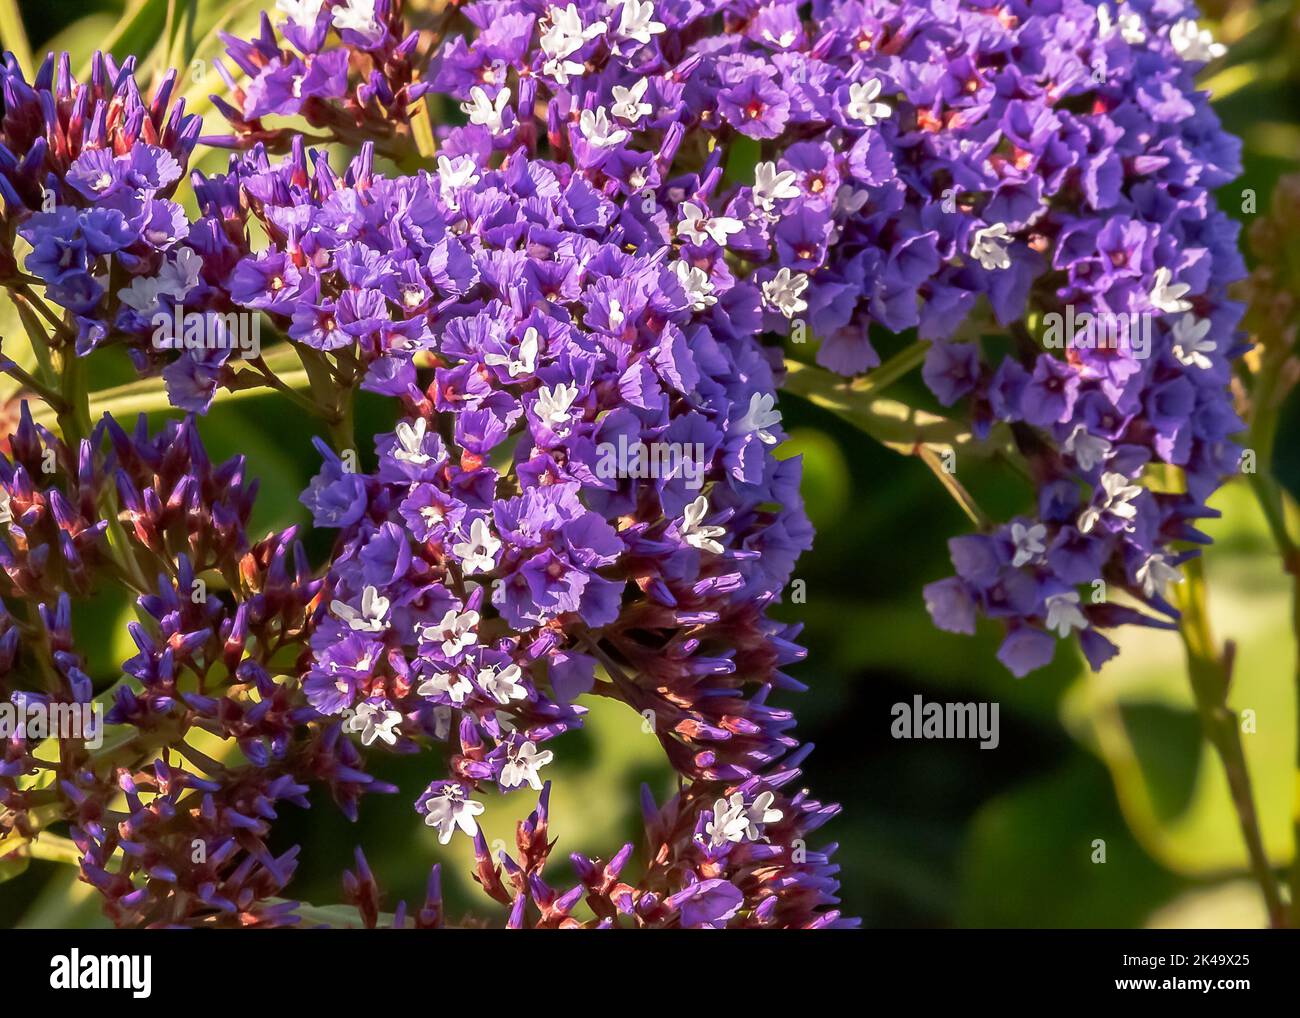 A closeup shot of limonium lavender flowers Stock Photo